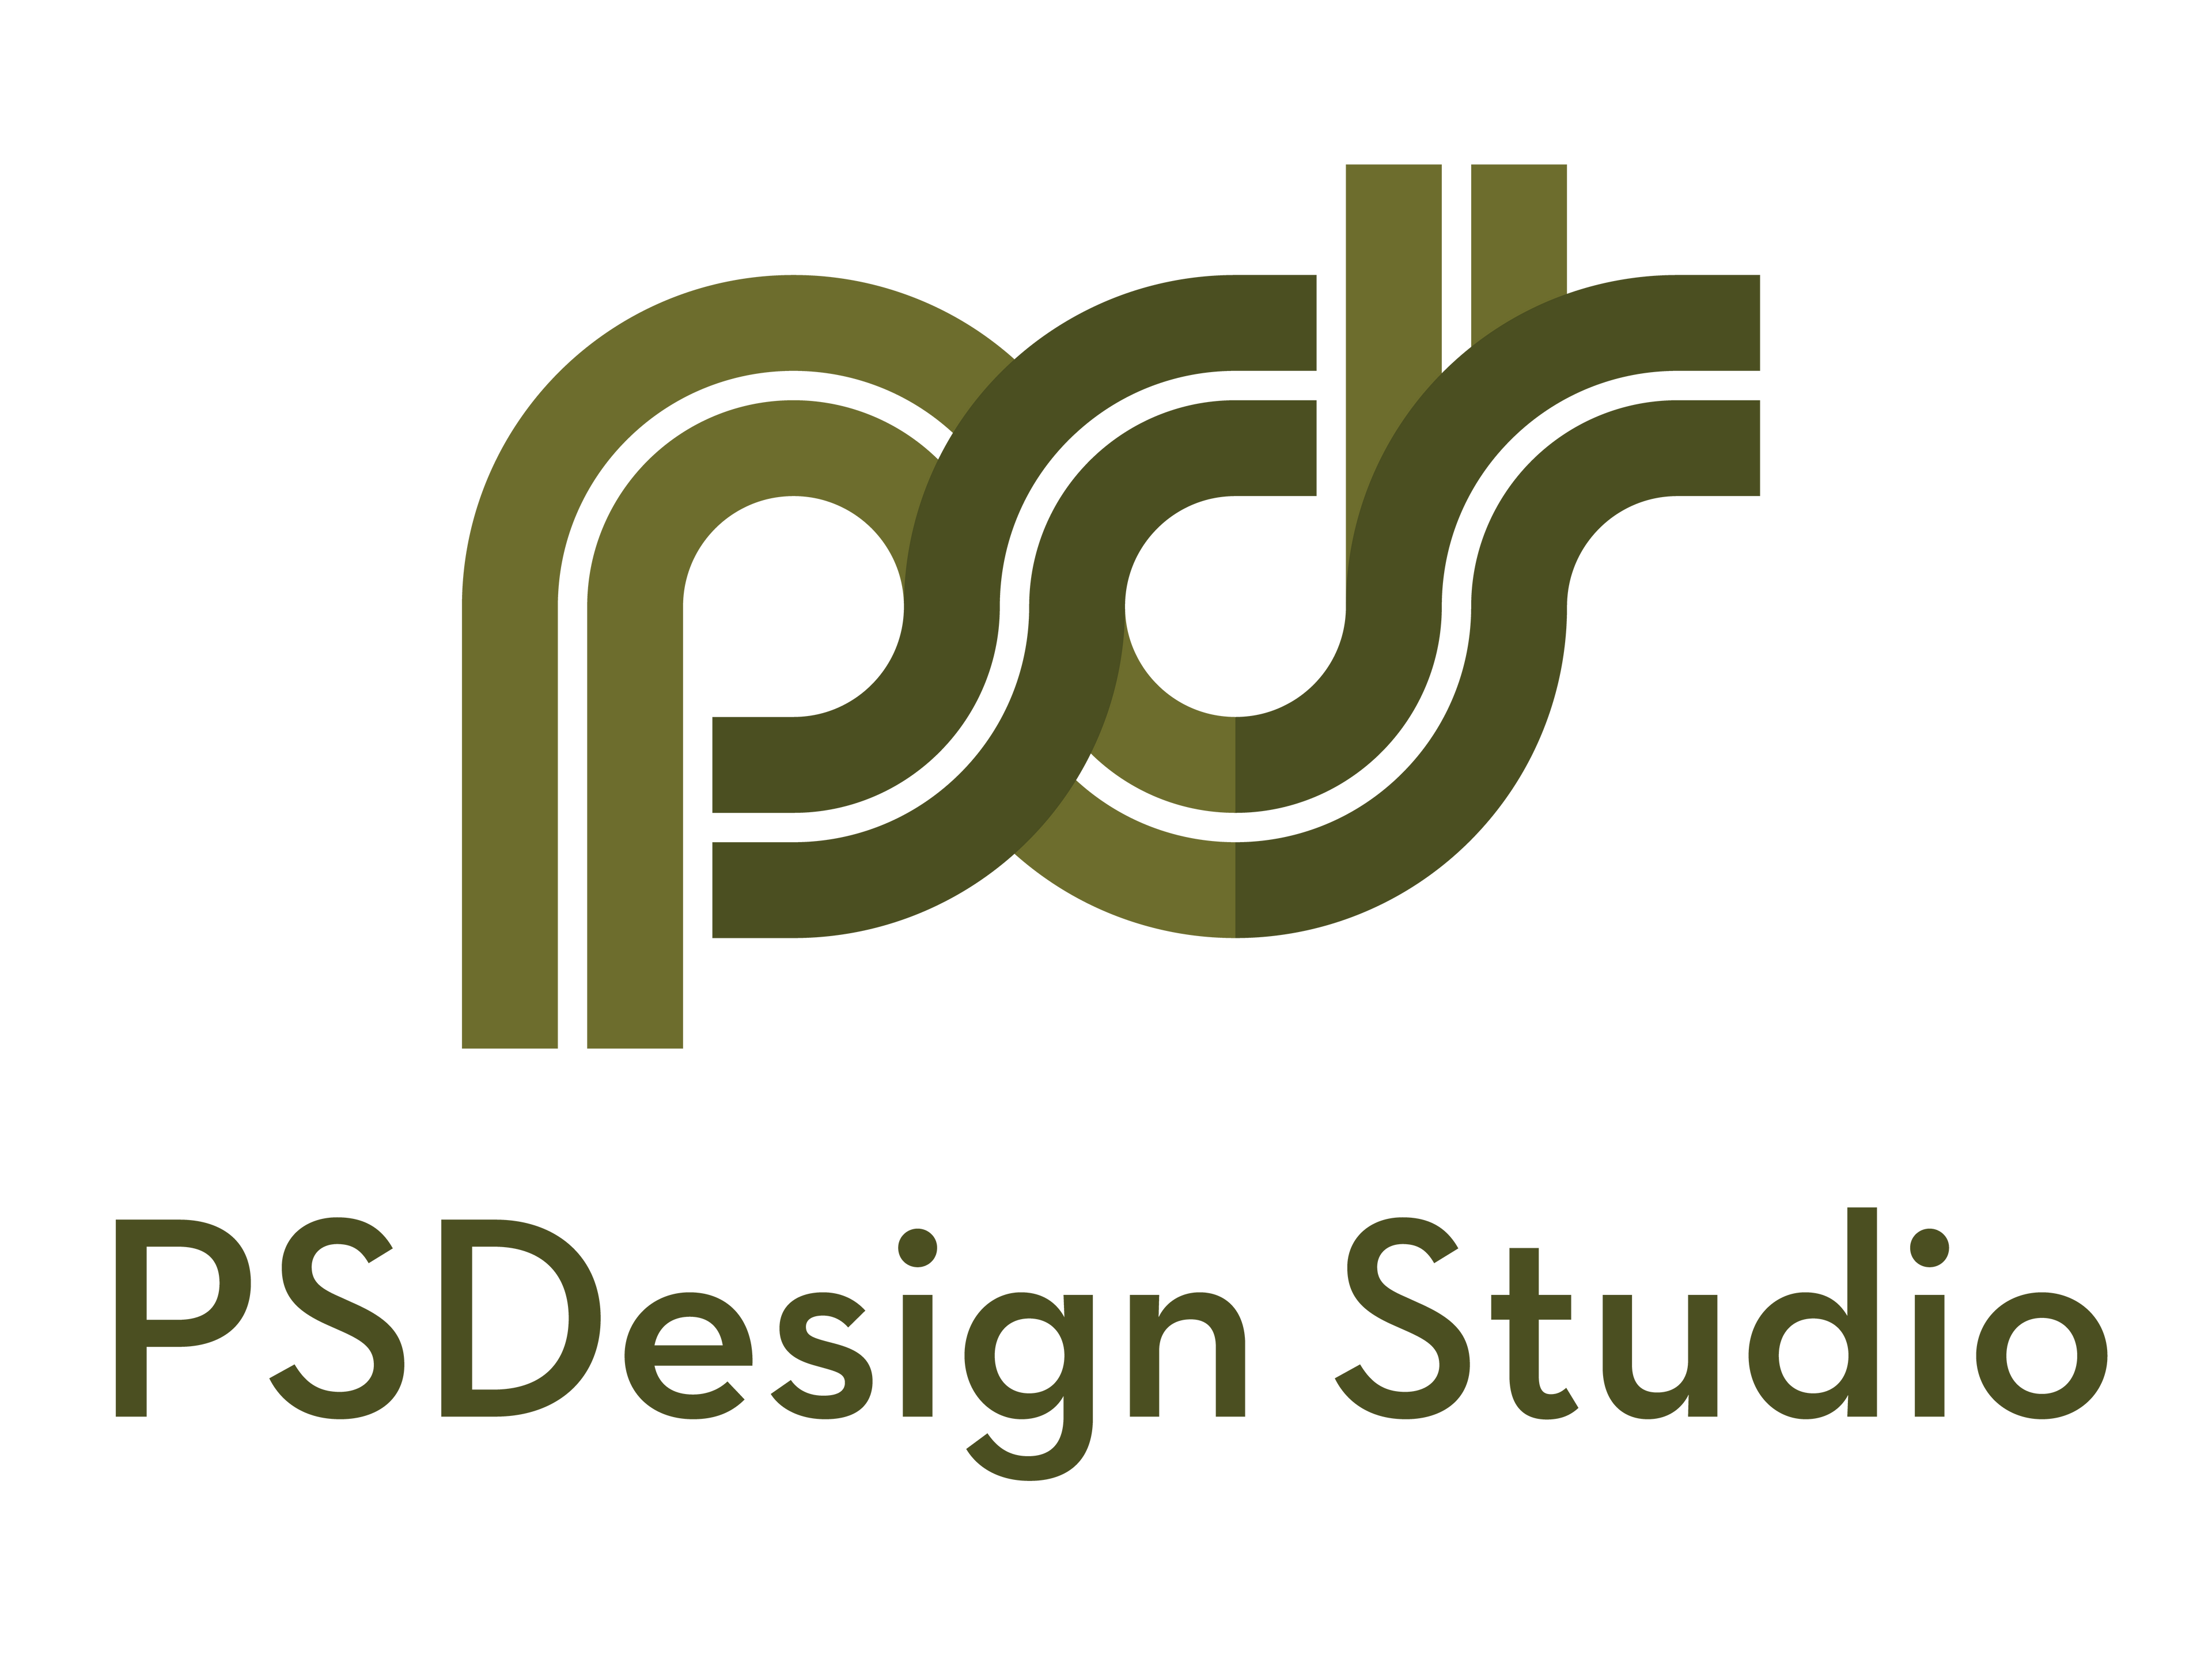 PS Design Studio